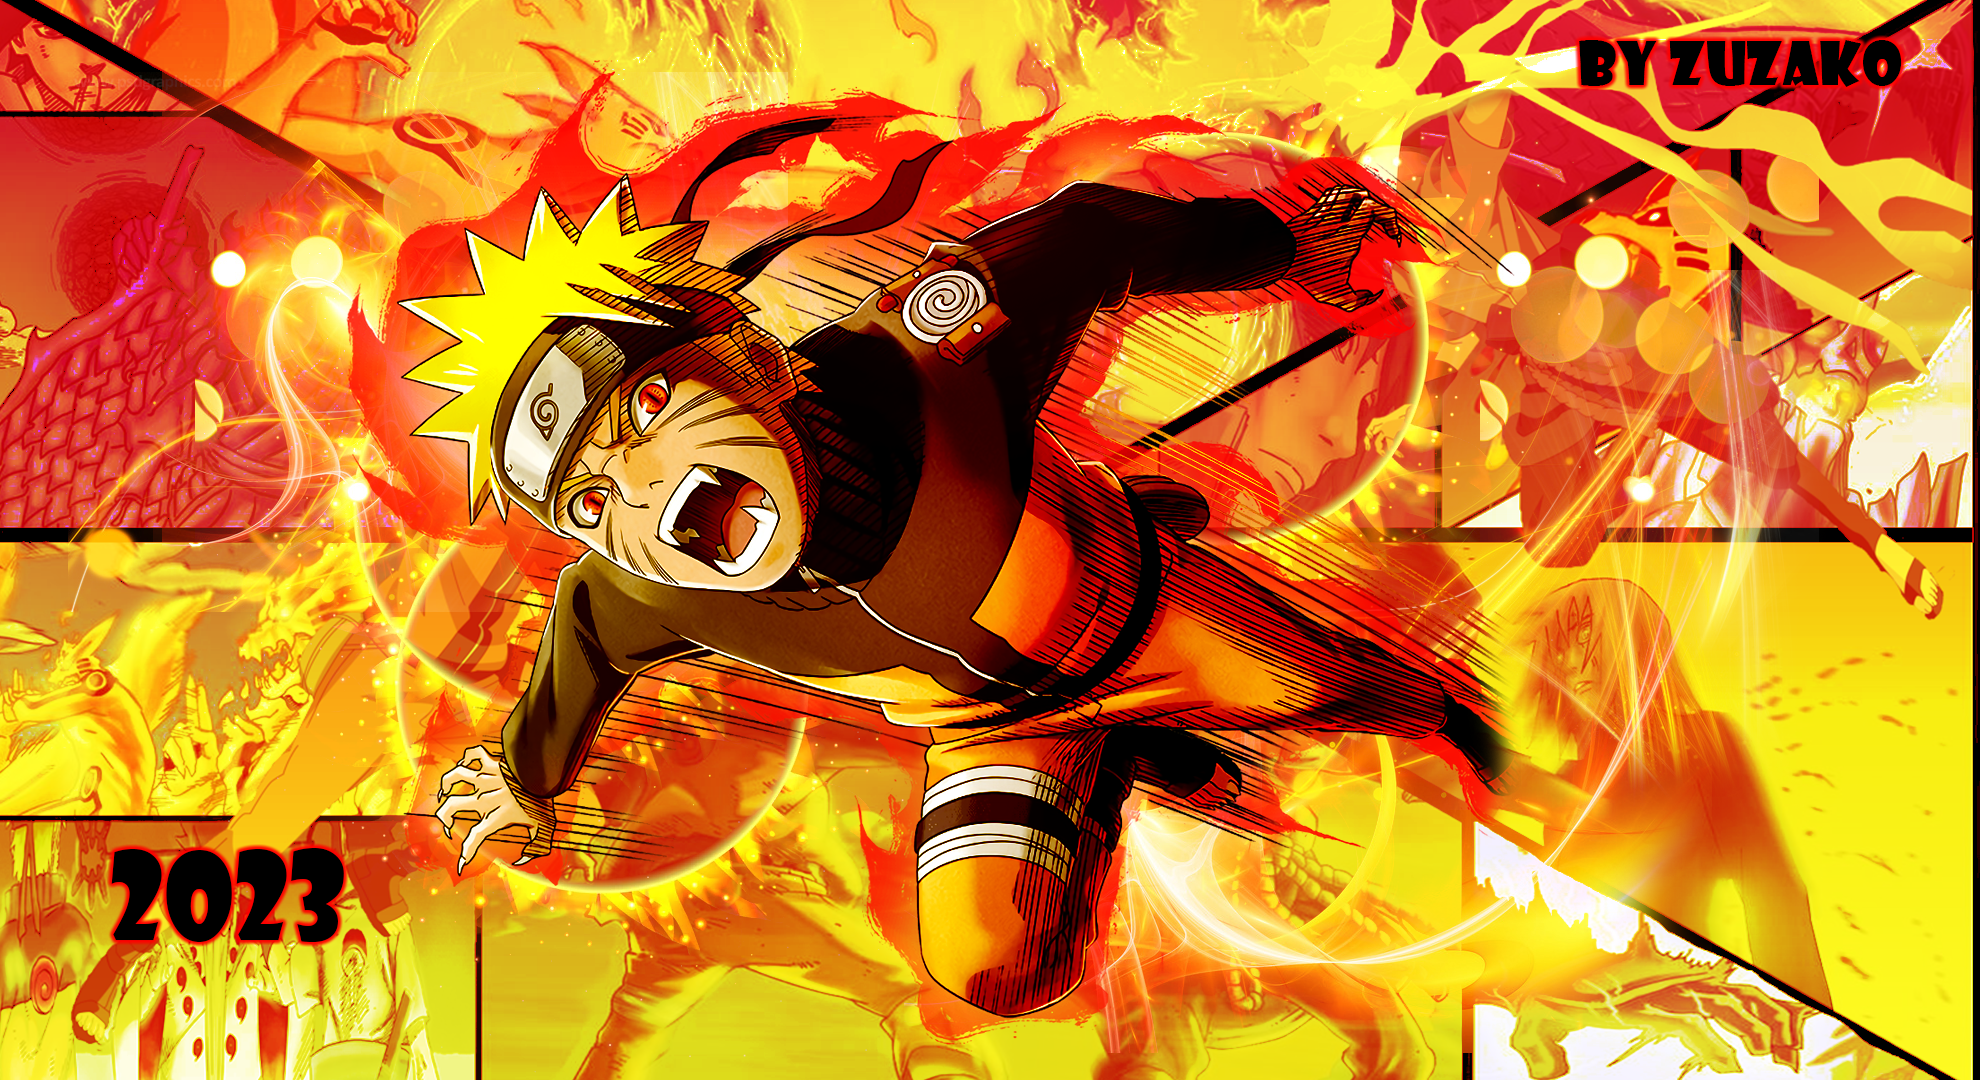 Hãy khám phá hiệu ứng Kyuubi Mode trên hình nền Naruto Kyuubi Mode Wallpaper. Với những hình ảnh màu sắc rực rỡ và phong phú, bạn sẽ được nhập cuộc vào những cuộc chiến gay cấn giữa các anh hùng. Hãy tải xuống bộ sưu tập đầy đủ những hình ảnh Naruto để cảm nhận được toàn bộ cuộc phiêu lưu tuyệt vời này.